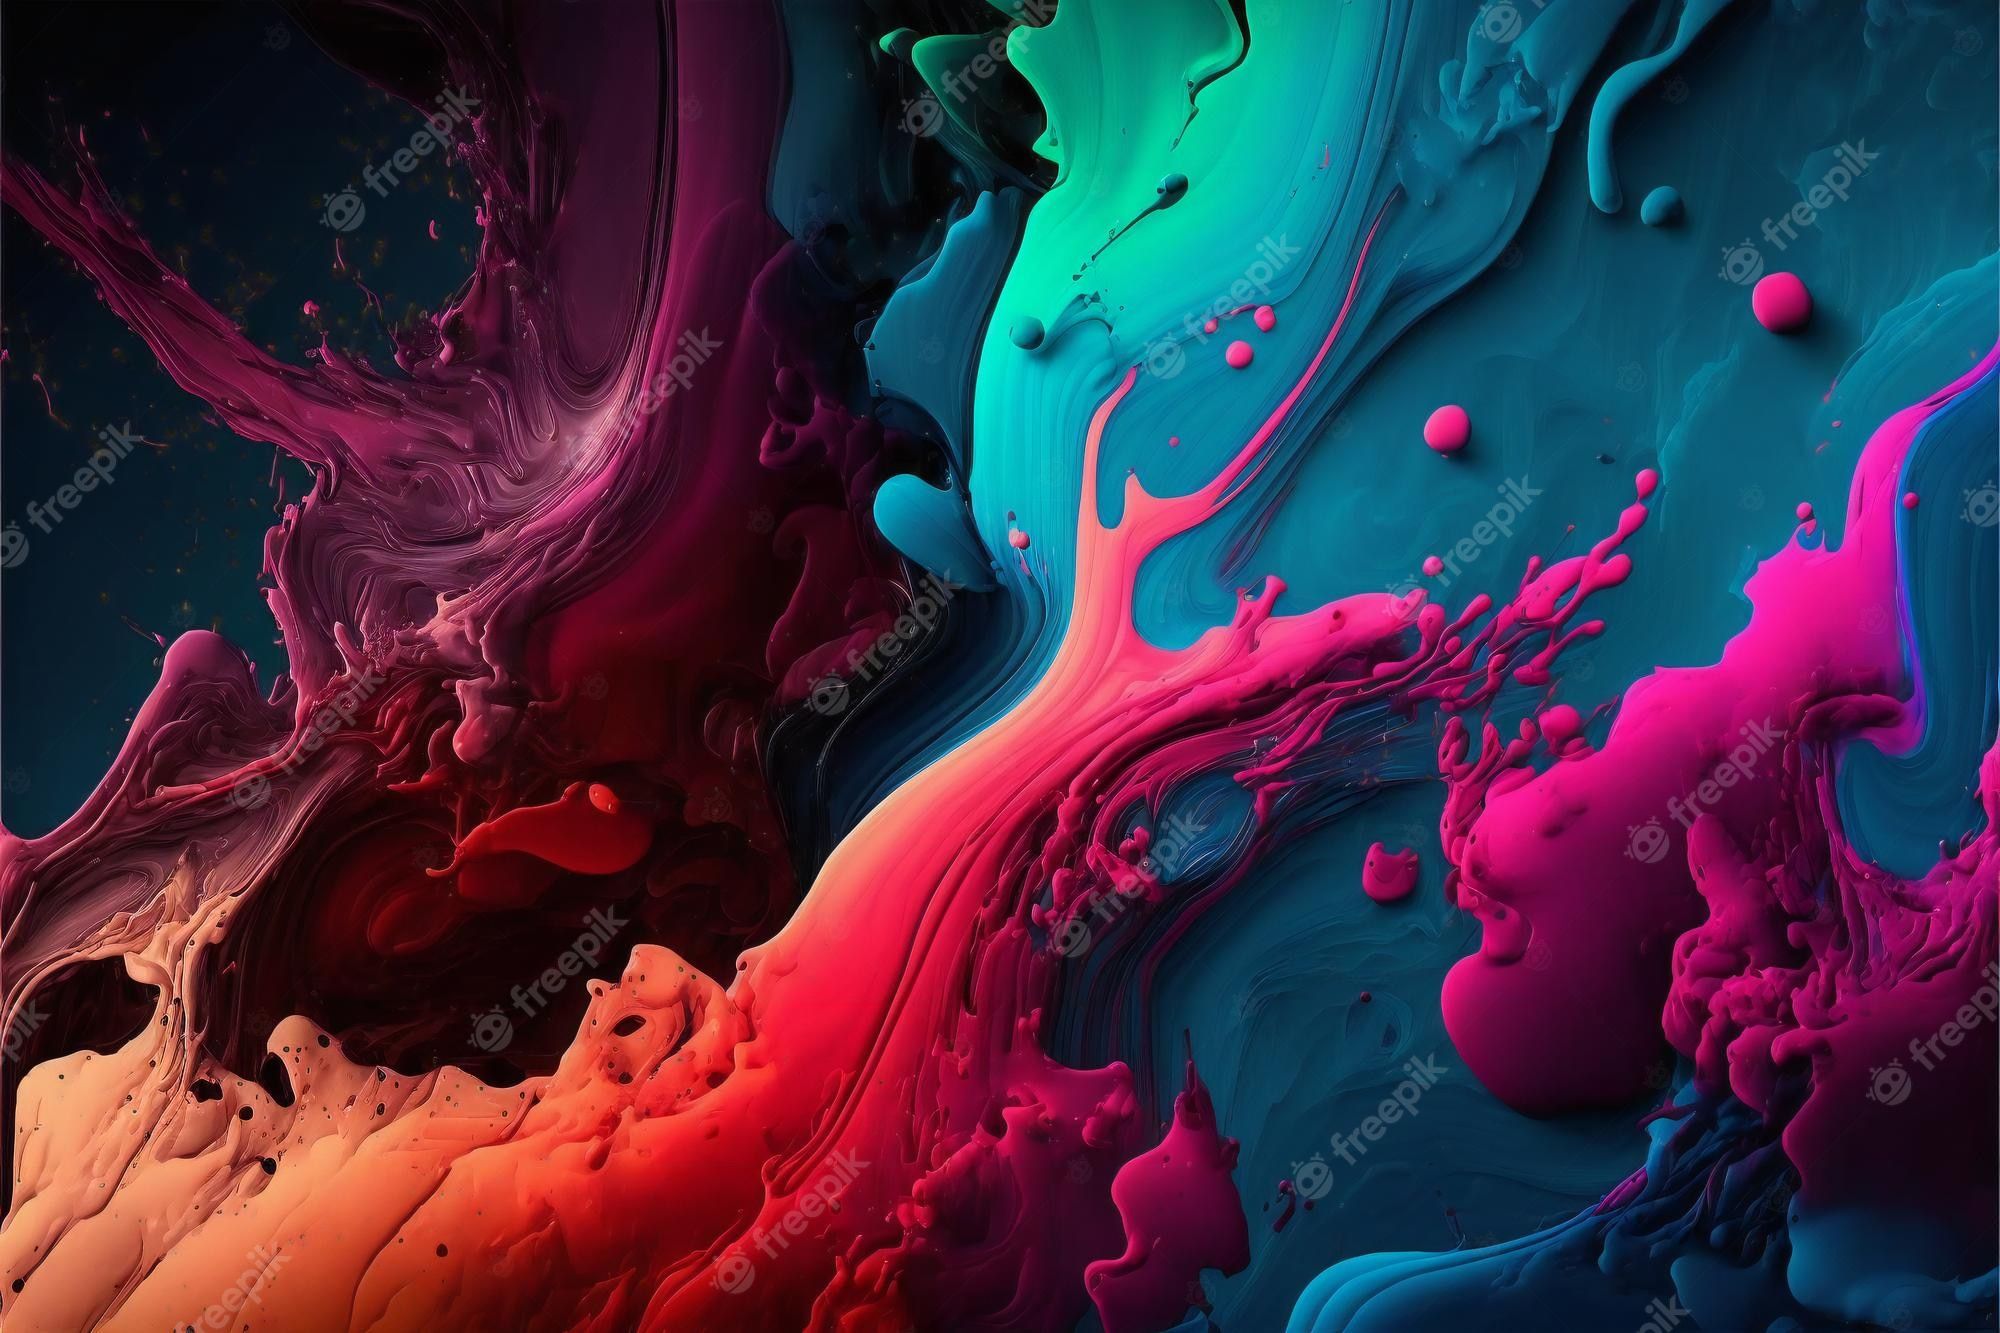  Farbiges Hintergrundbild 2000x1333. Malen sie texturen als farbige abstrakte hintergrundbilder kreative digitale illustrationsmalerei